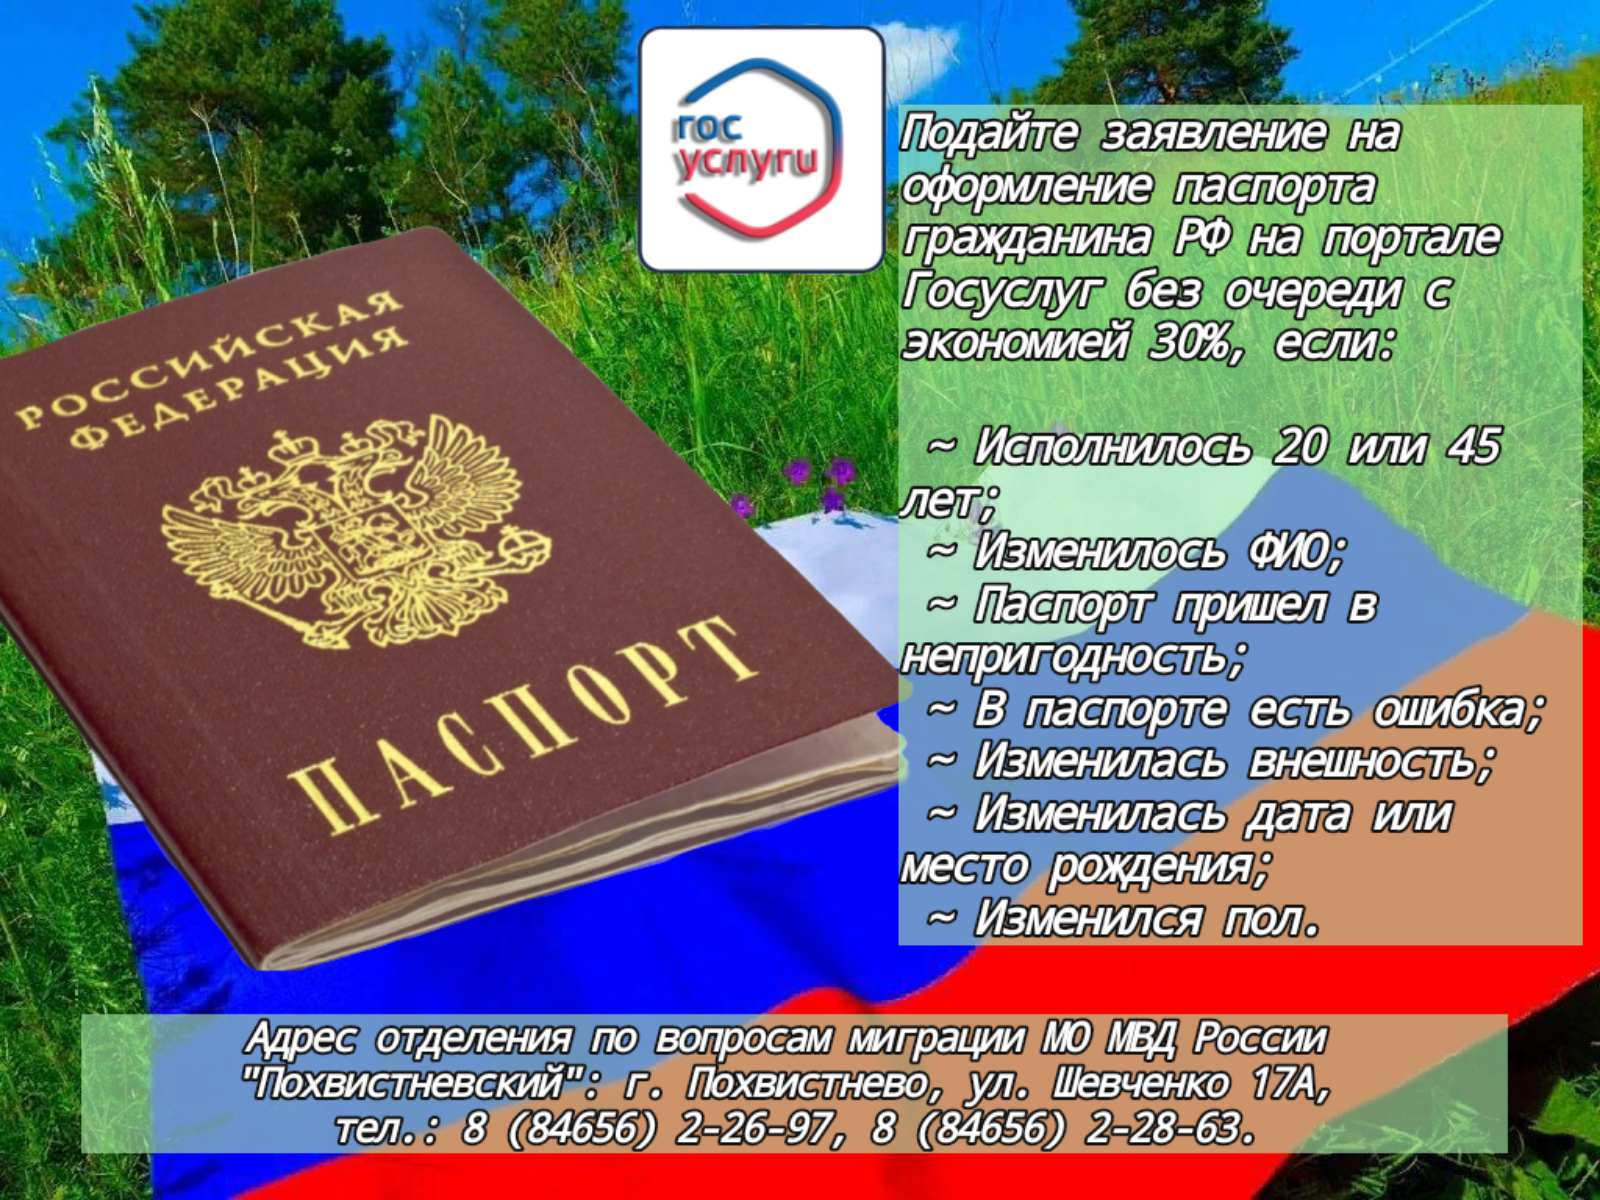 Документы удостоверяющие личность гражданина на территории рф. Документ удостоверяющий личность на территории РФ.